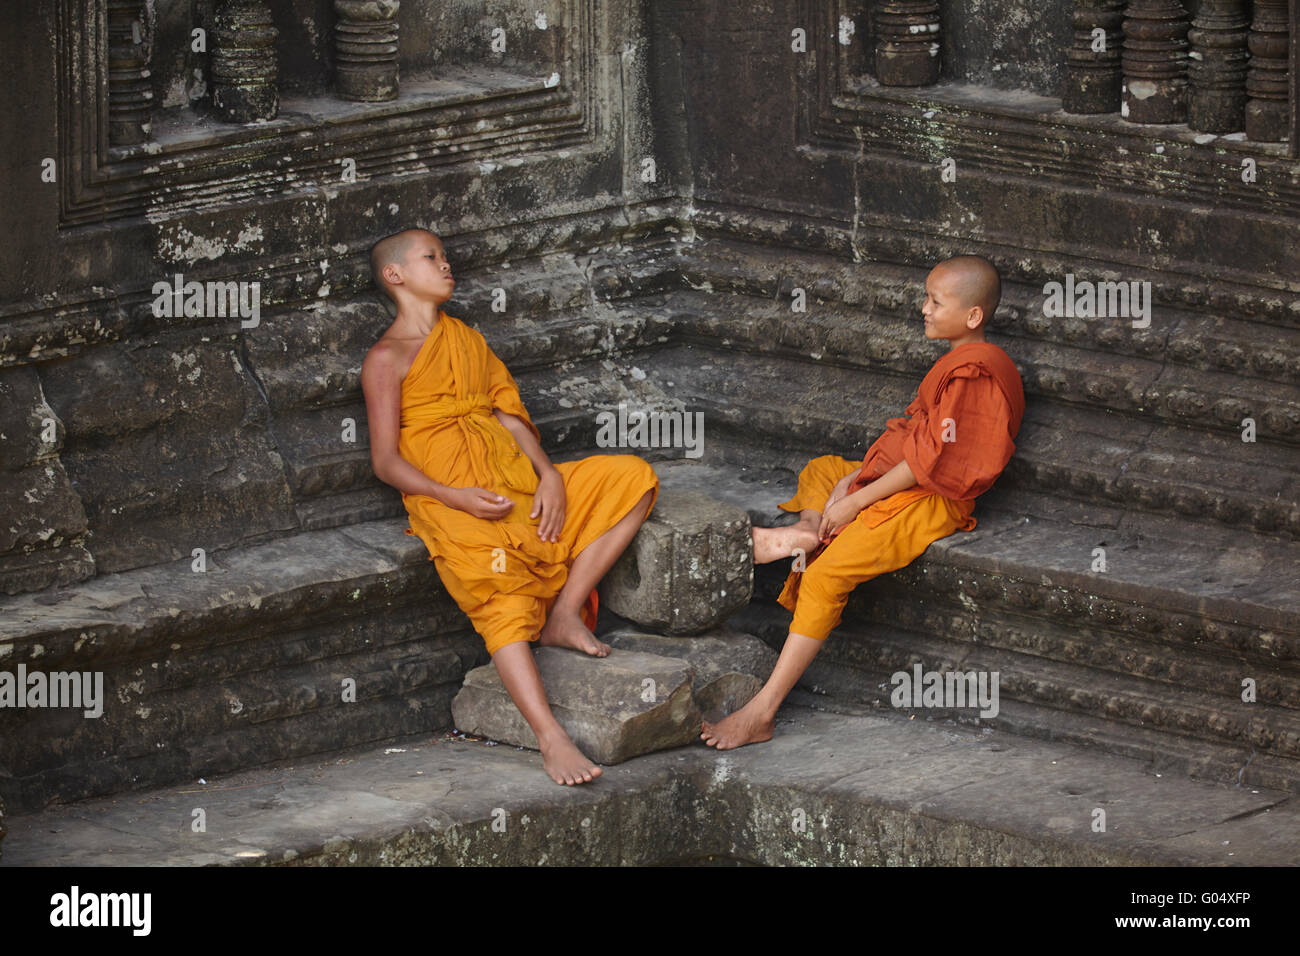 Les jeunes moines bouddhistes à Angkor Wat temple Khmer (12e siècle), site du patrimoine mondial d'Angkor, Siem Reap, Cambodge Banque D'Images